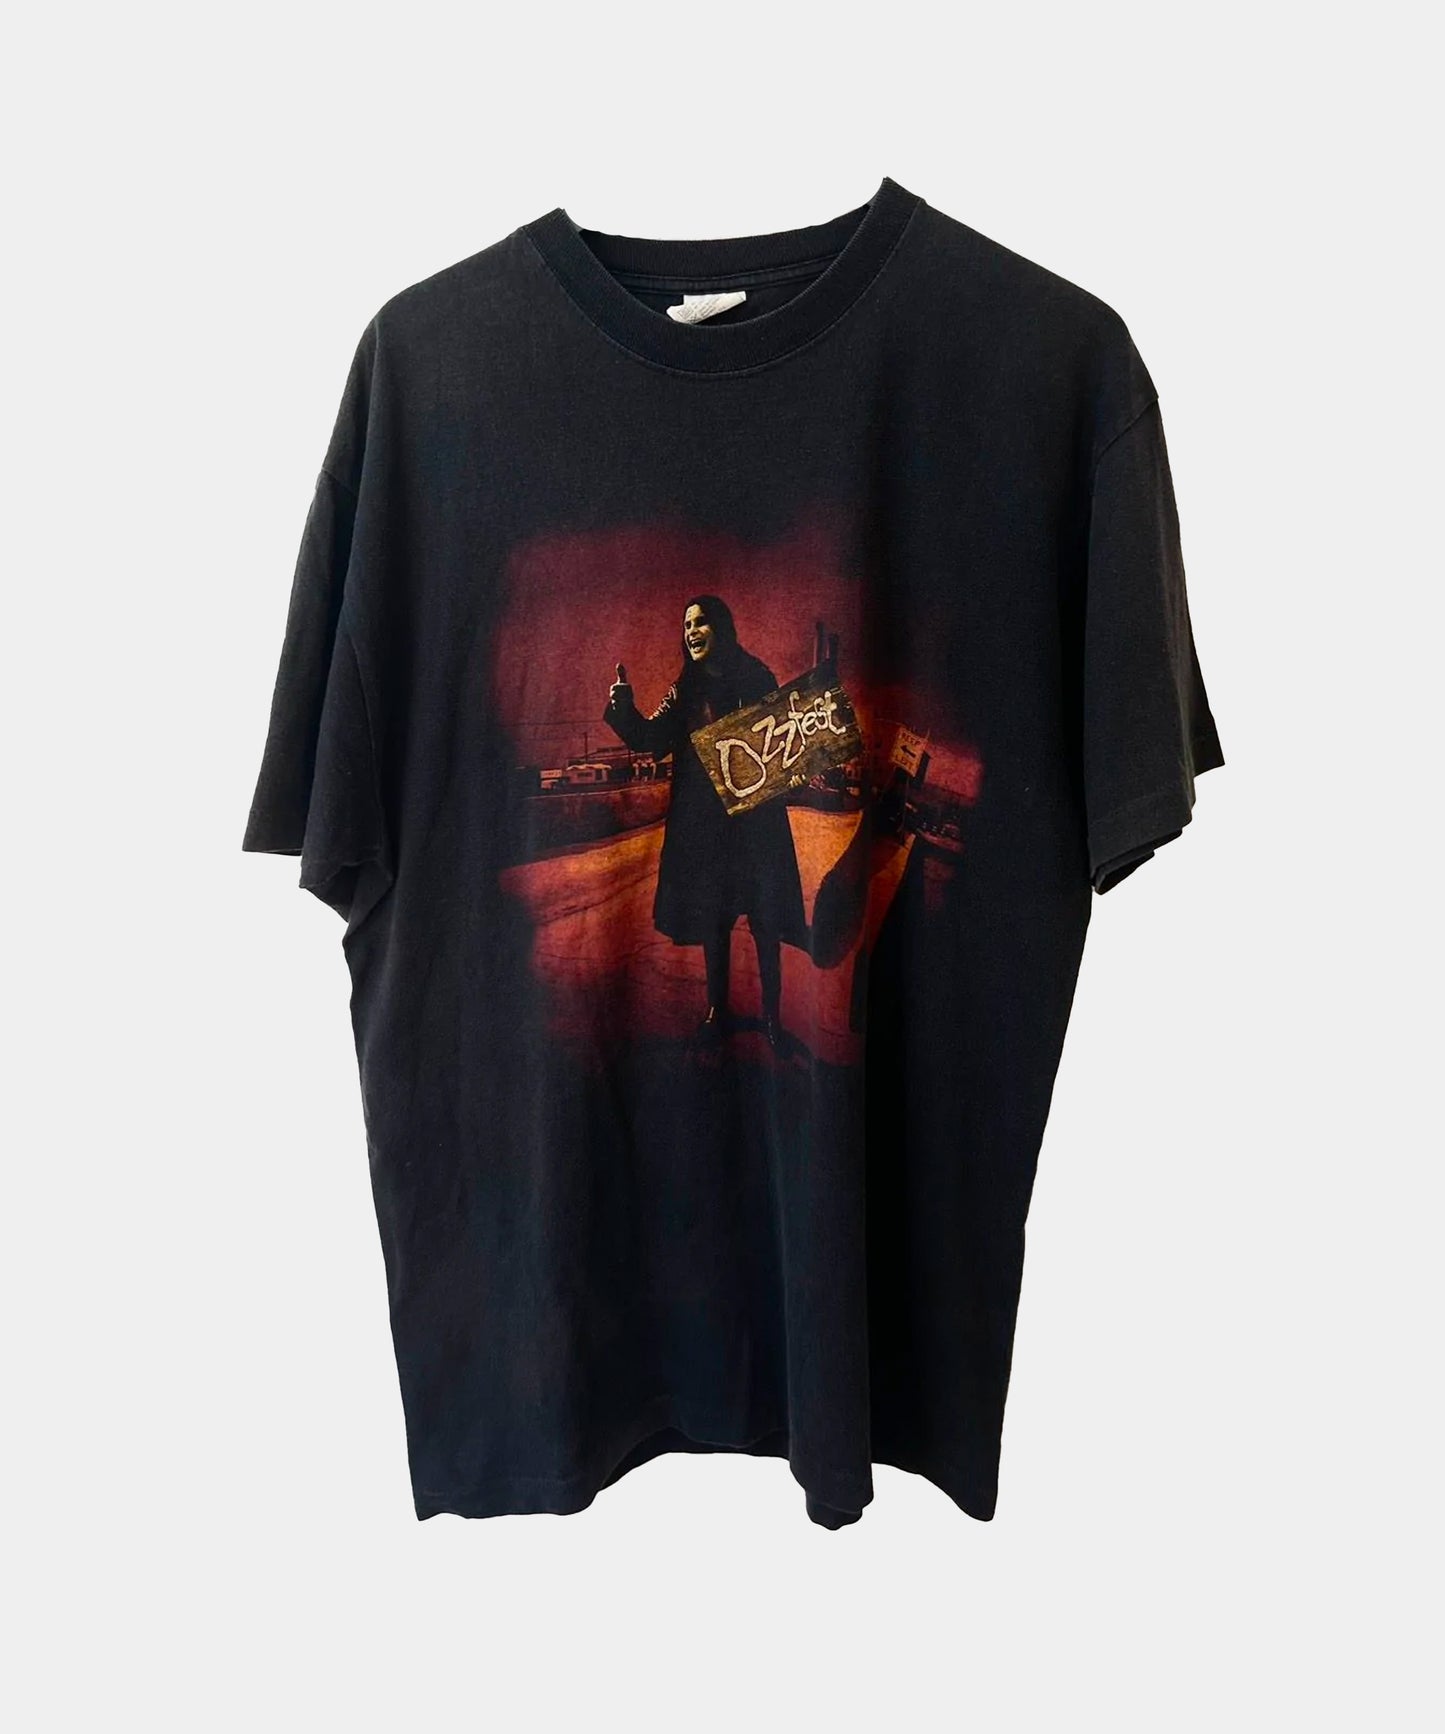 Vintage Ozzy Osbourne OZZFEST 98 Shirt XL Single Stitch